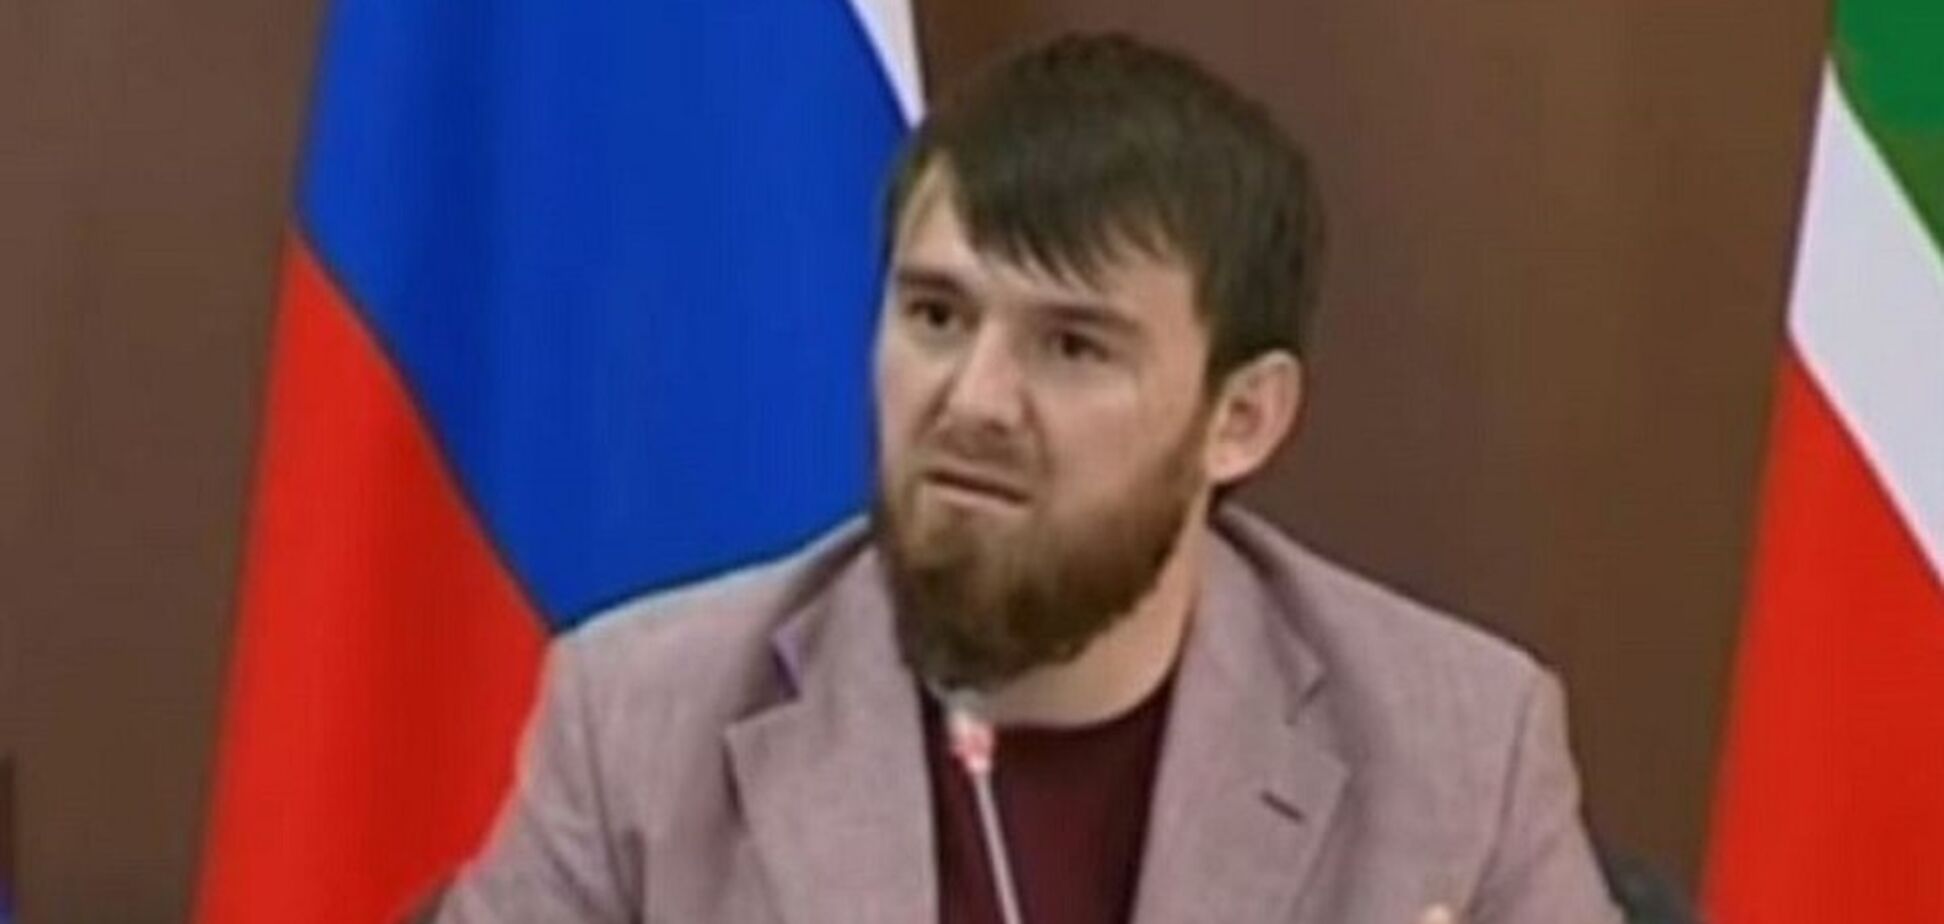 Бив жінку електрошокером: у Чечні почали розслідування проти племінника Кадирова